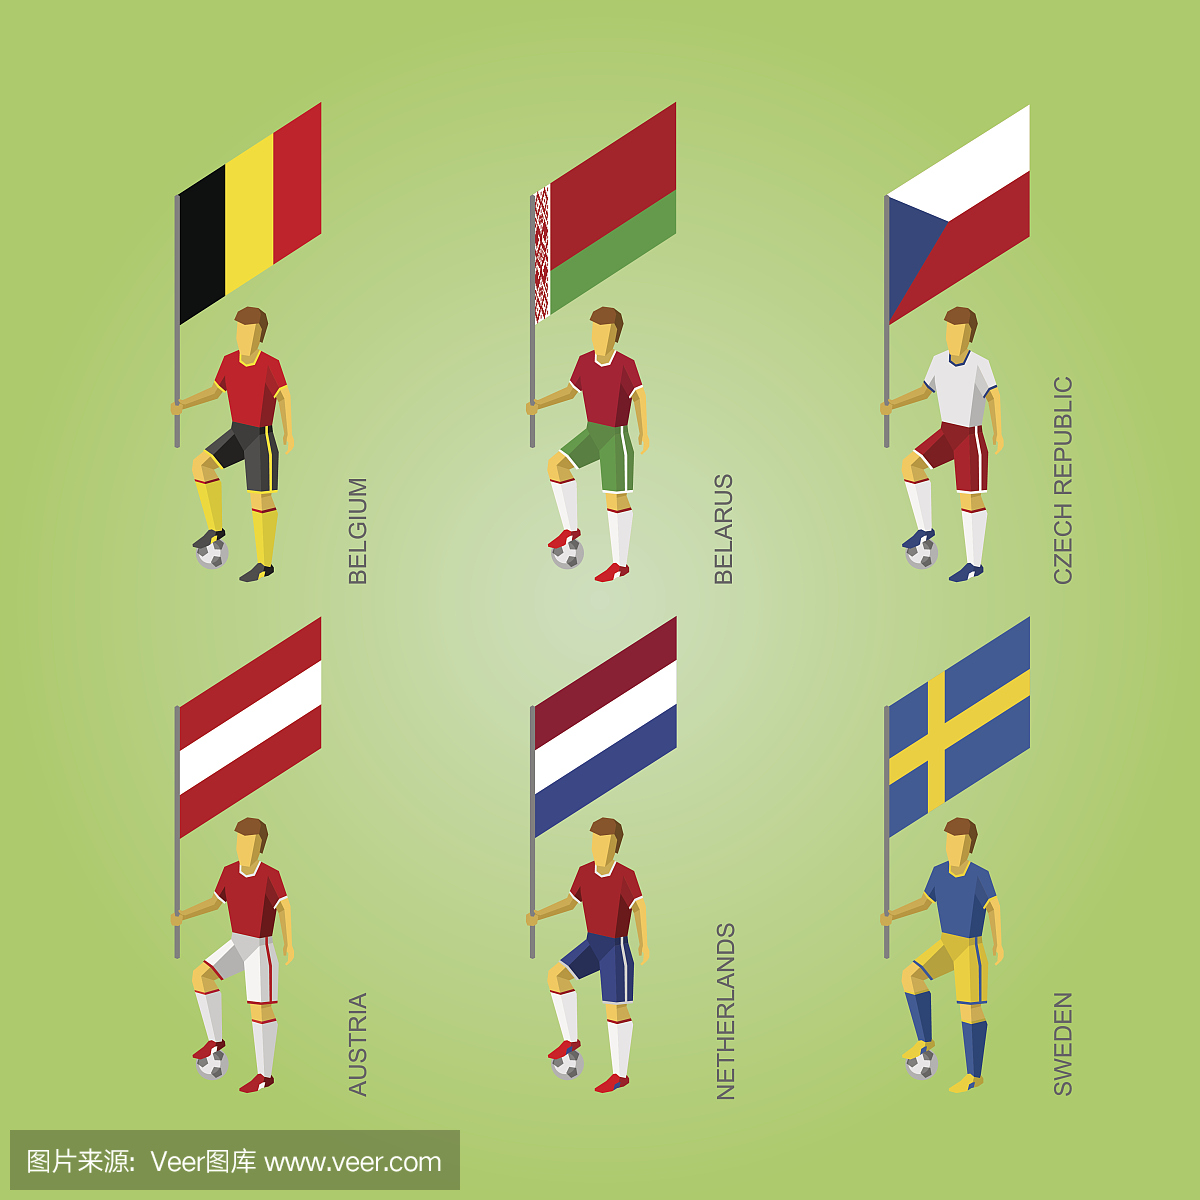 具有国旗的足球运动员:比利时,白俄罗斯,捷克,奥